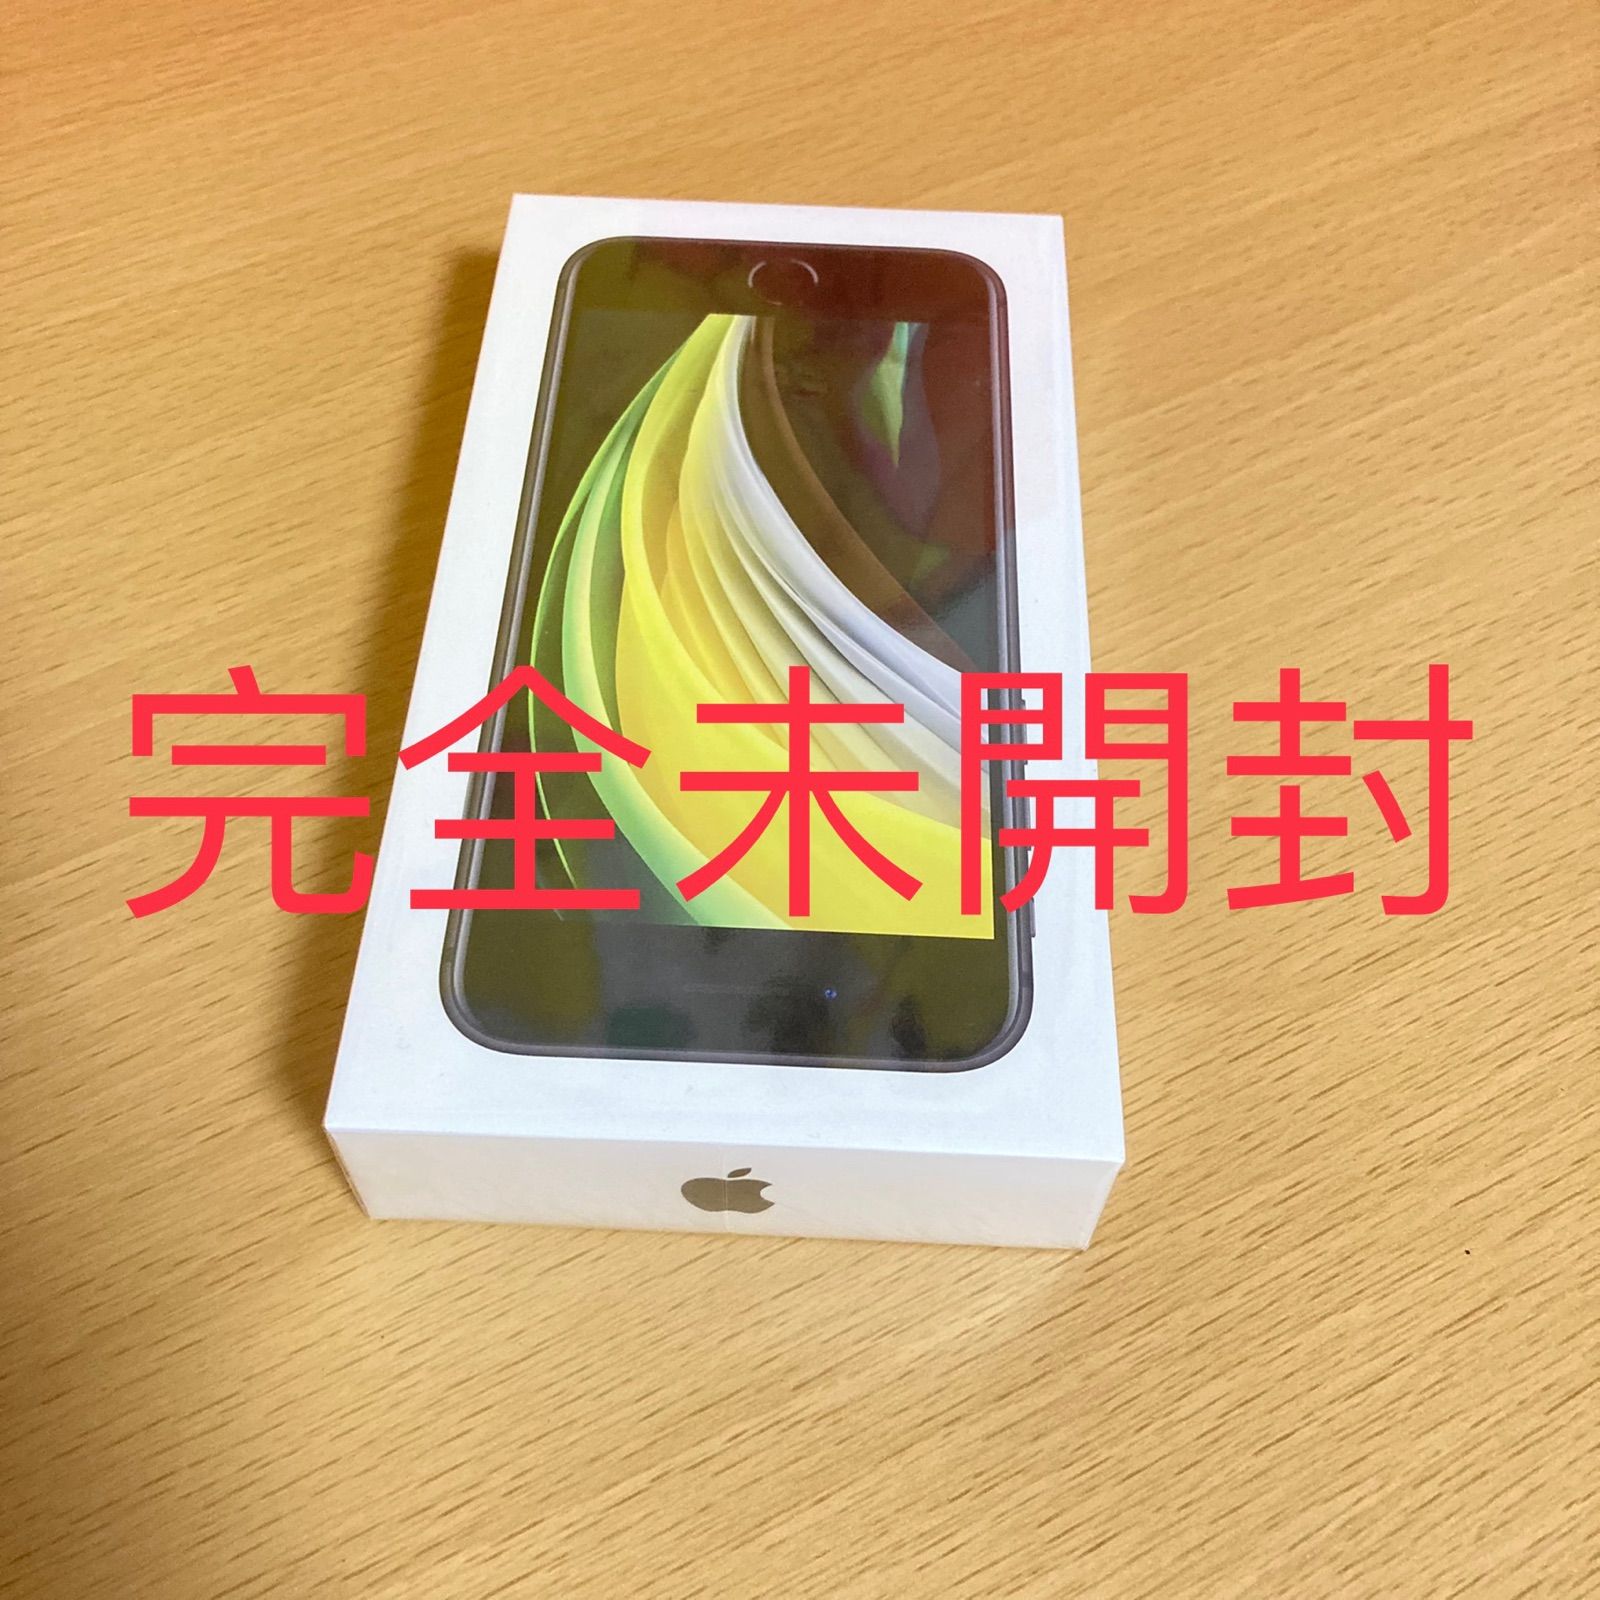 完全未開封】iPhone SE 第2世代 (SE2) ブラック64GB - なえ - メルカリ